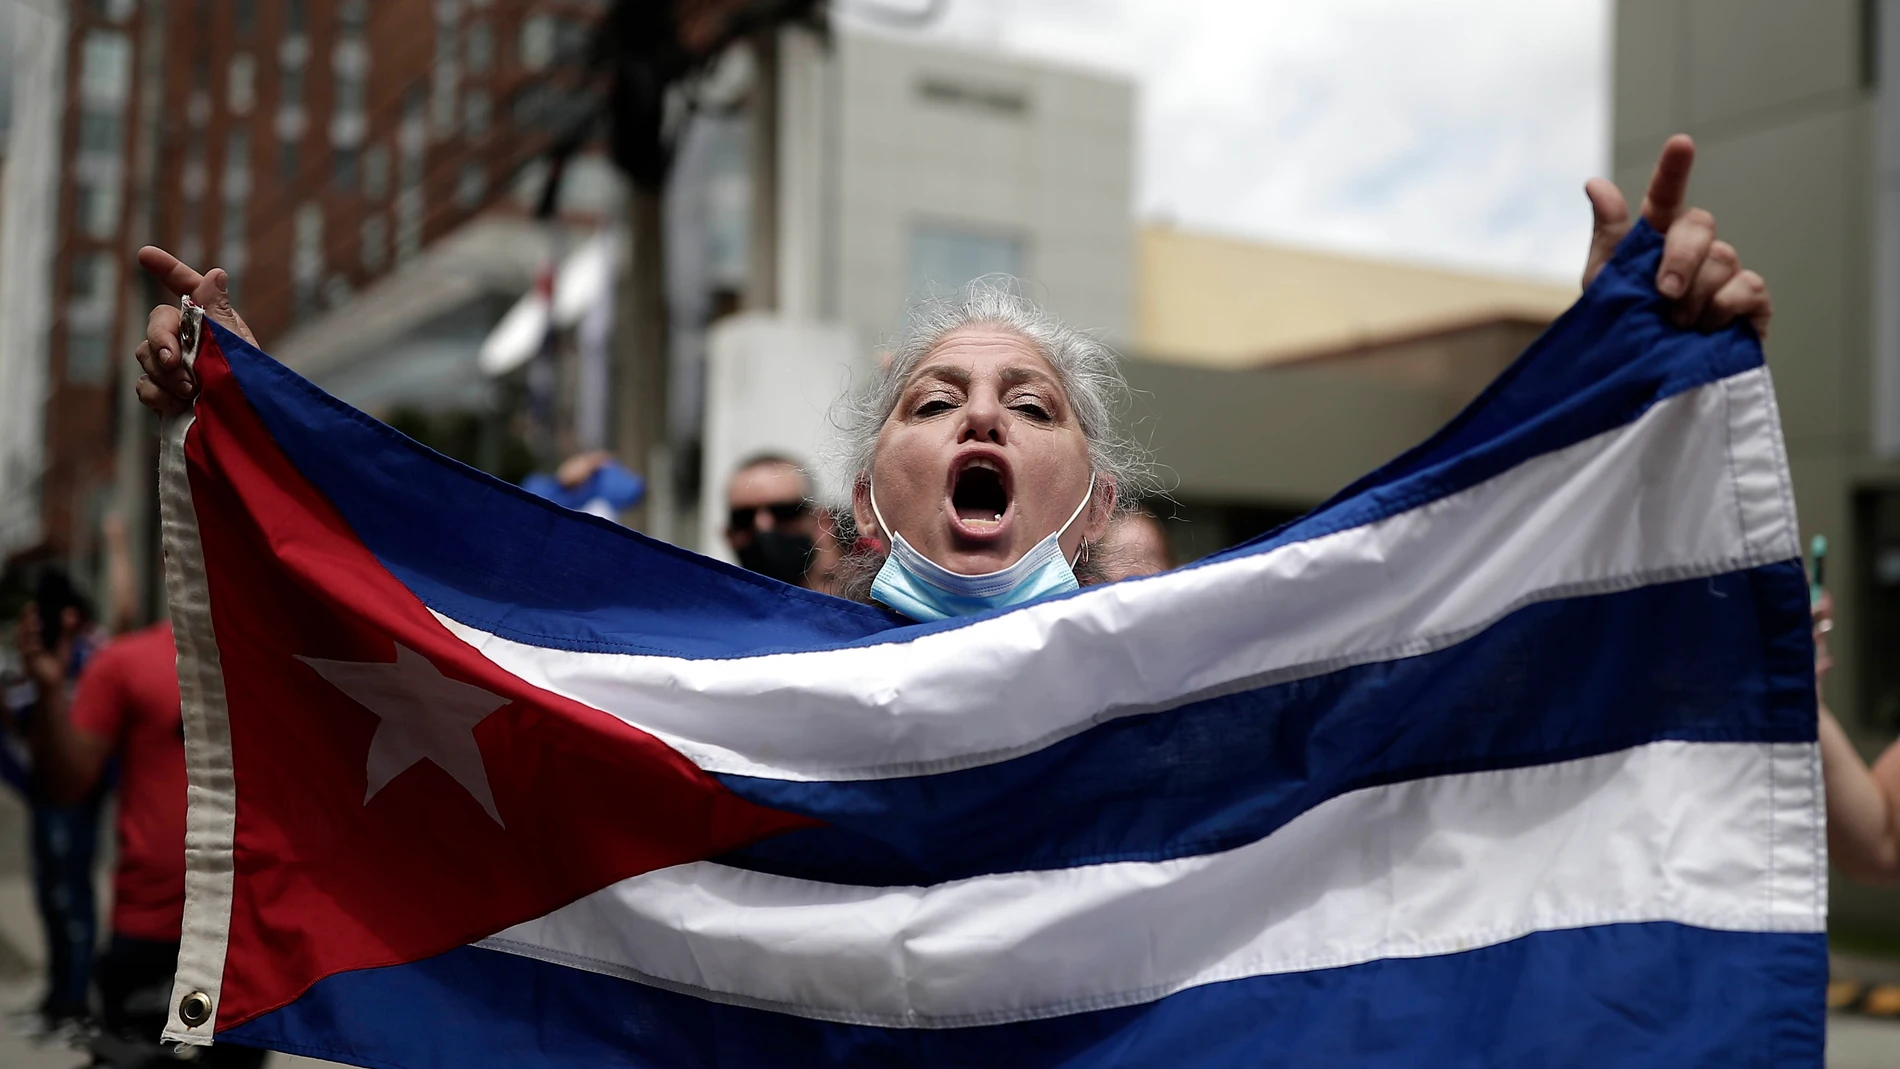 Protestas Cuba